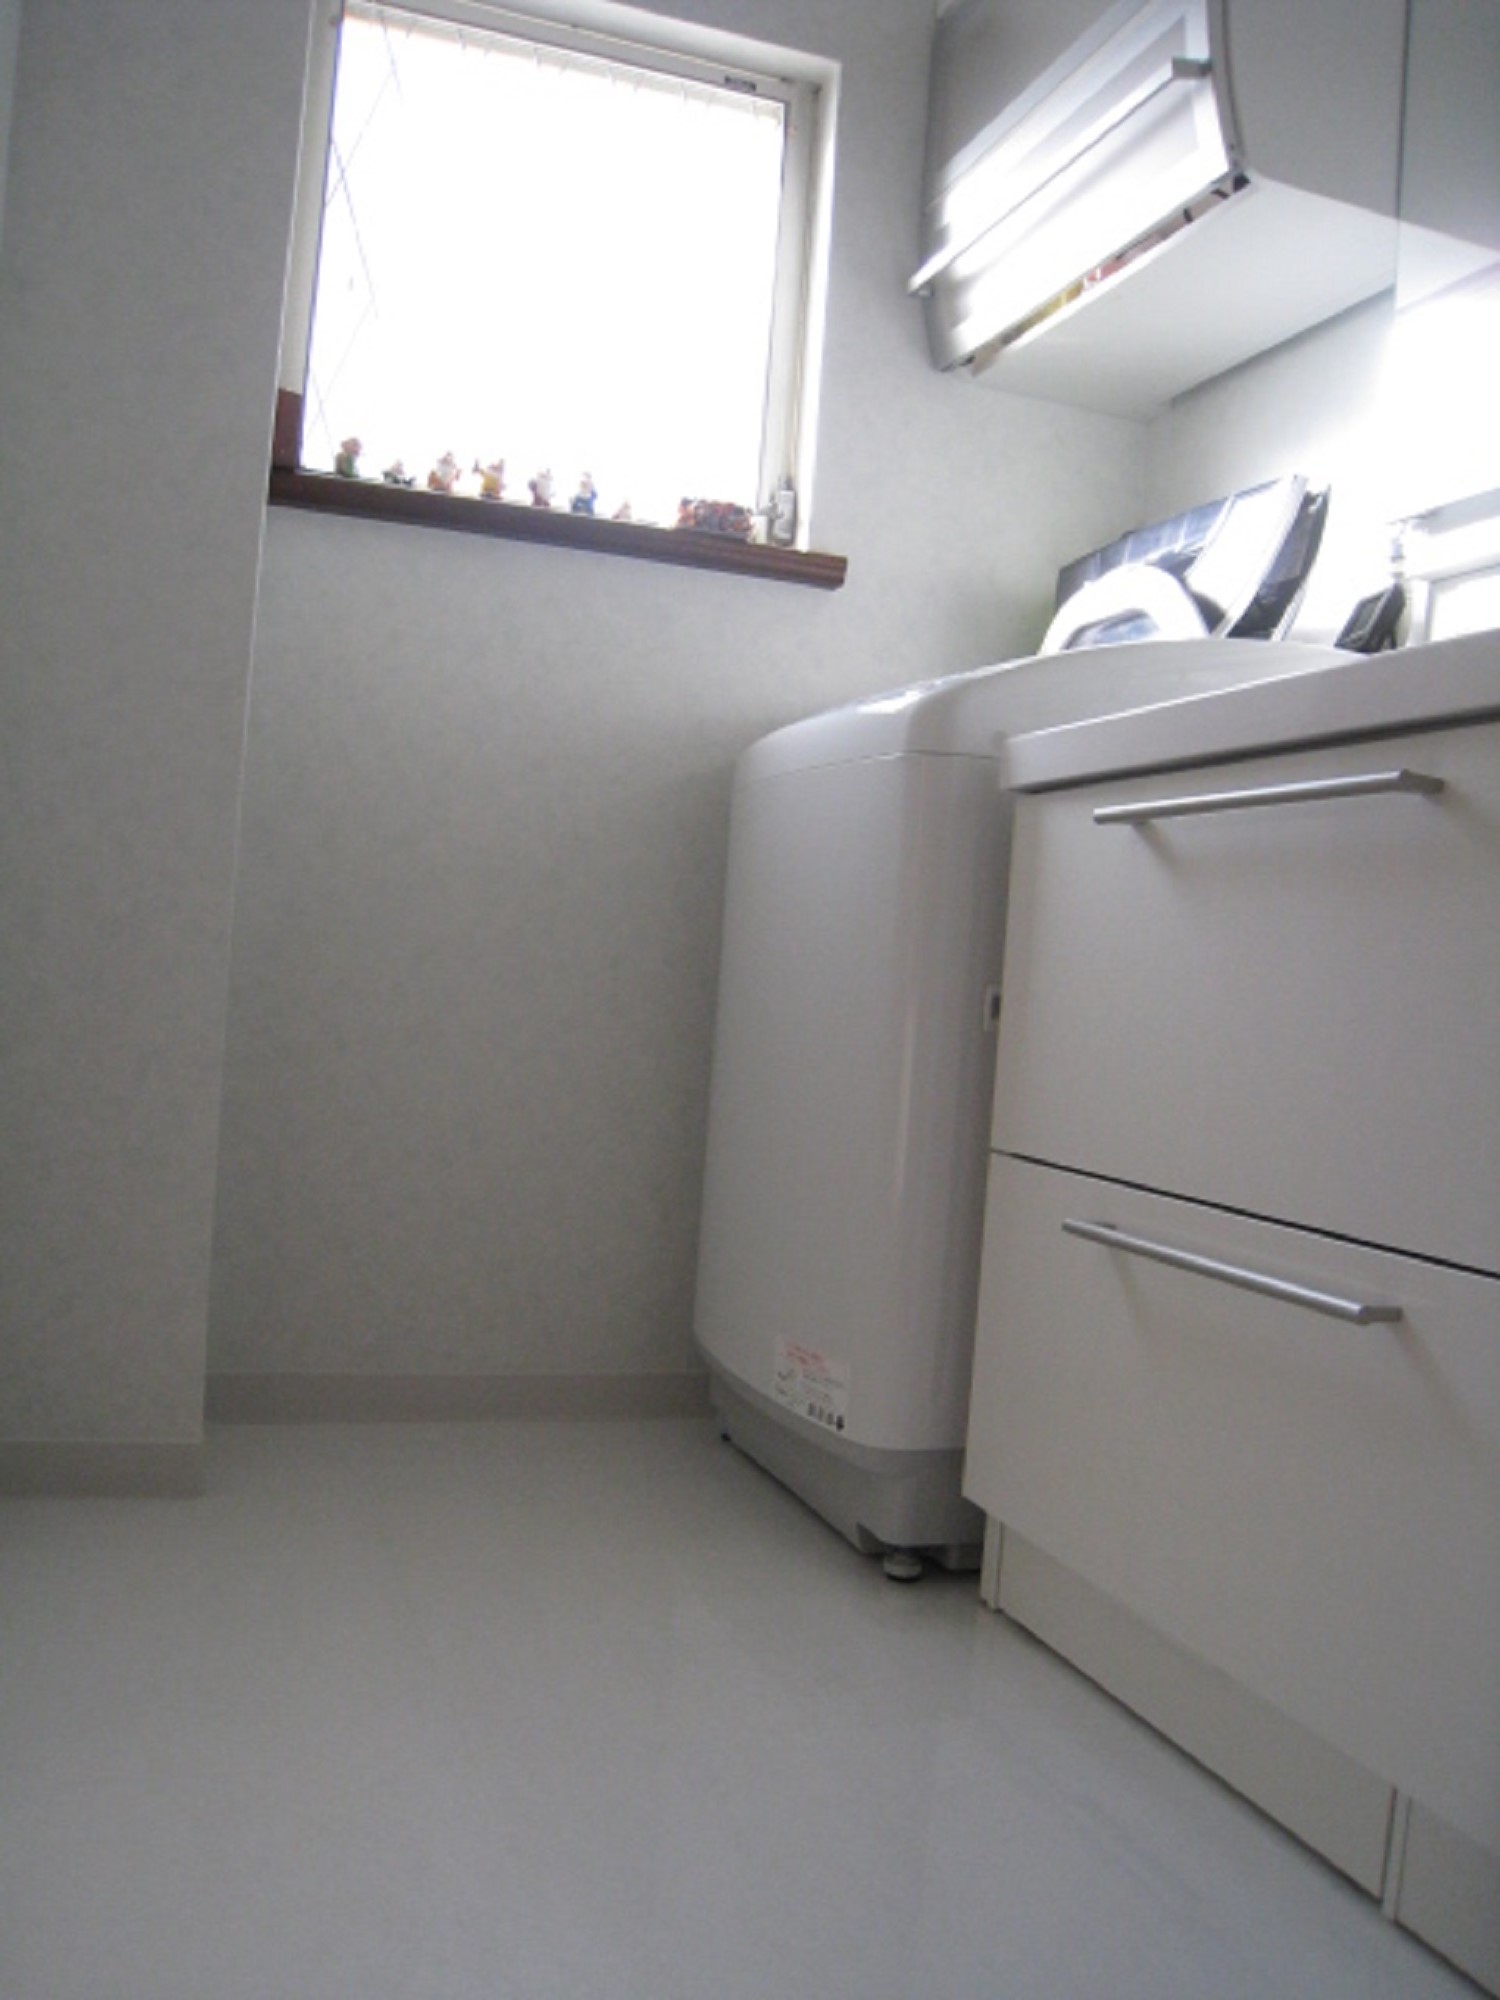 洗面所リフォーム Toto システム洗面化粧台 オクターブ 間口 1700mm を設置 洗面化粧台と洗濯機の位置 を入れ替えました 福岡県北九州市でリフォームとリノベーションと土地建物売買は須原建材へ